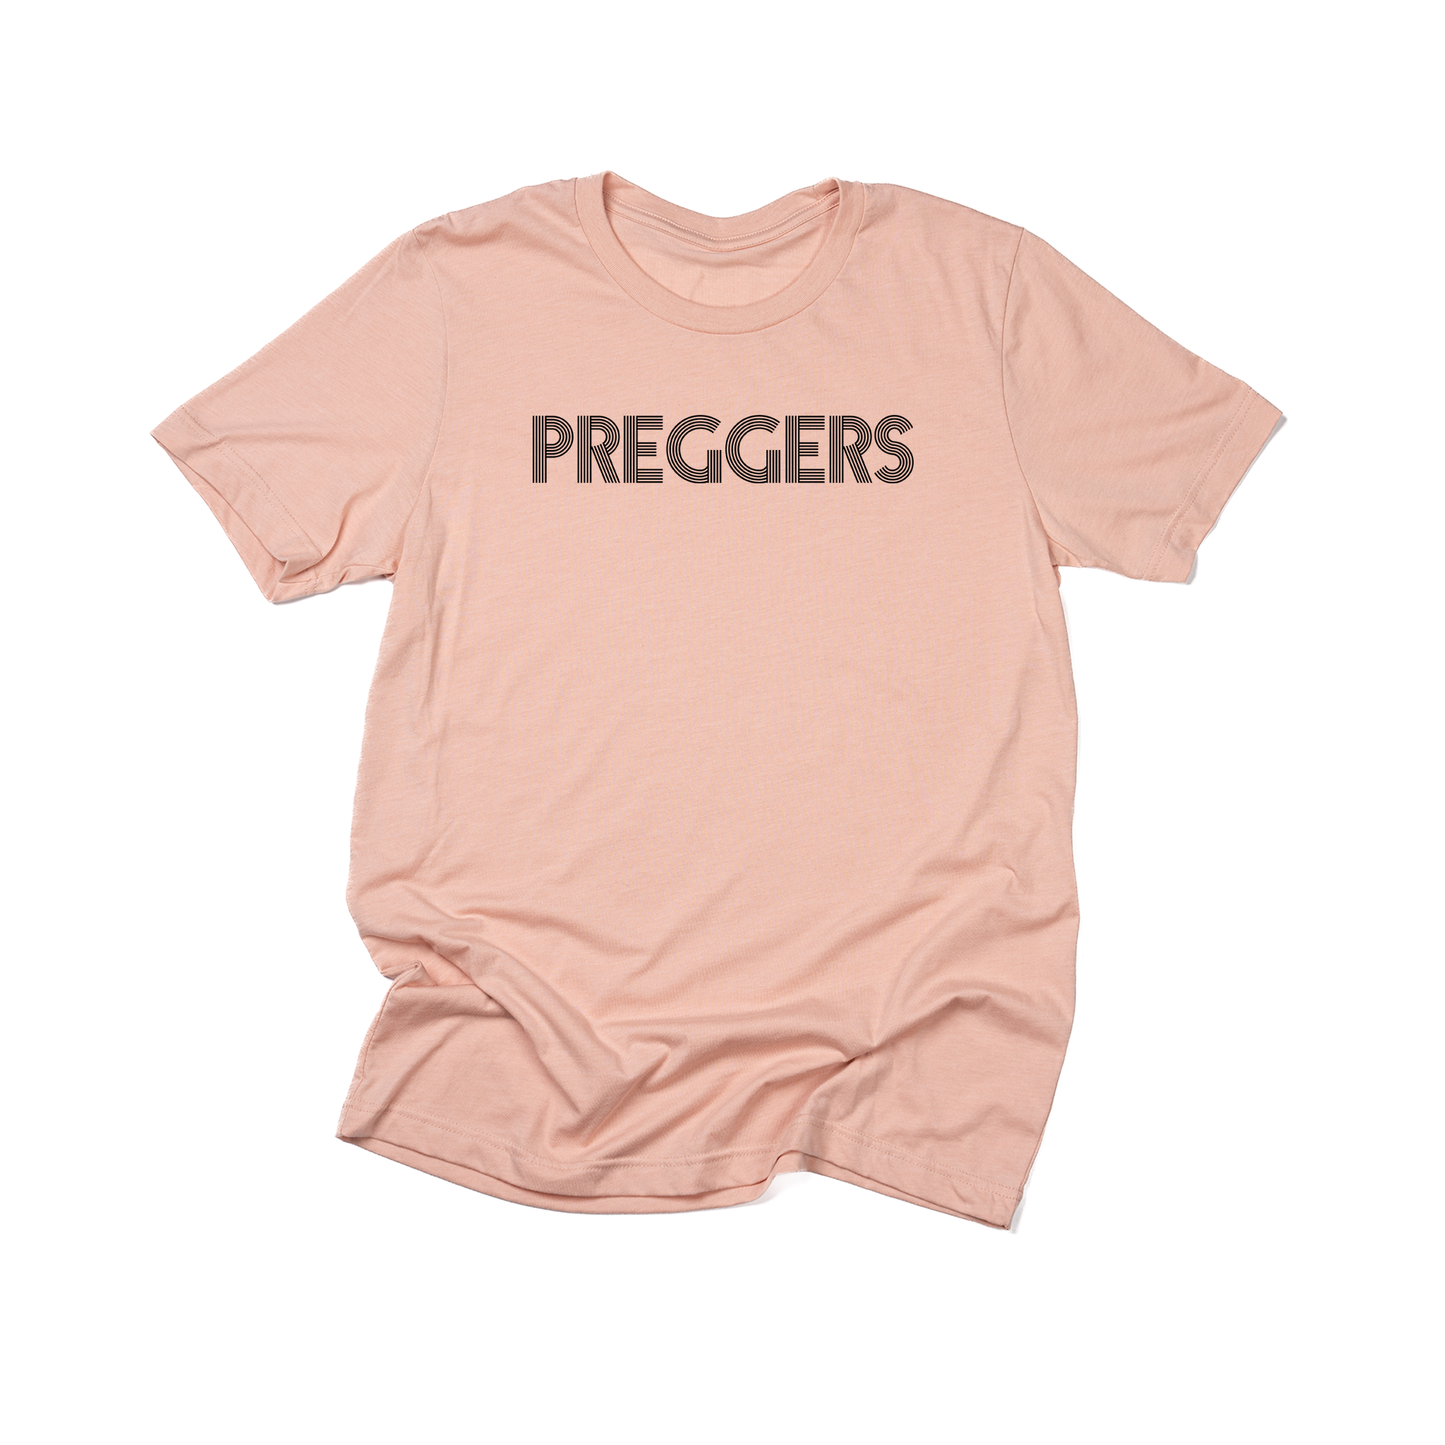 PREGGERS (Black) - Tee (Peach)